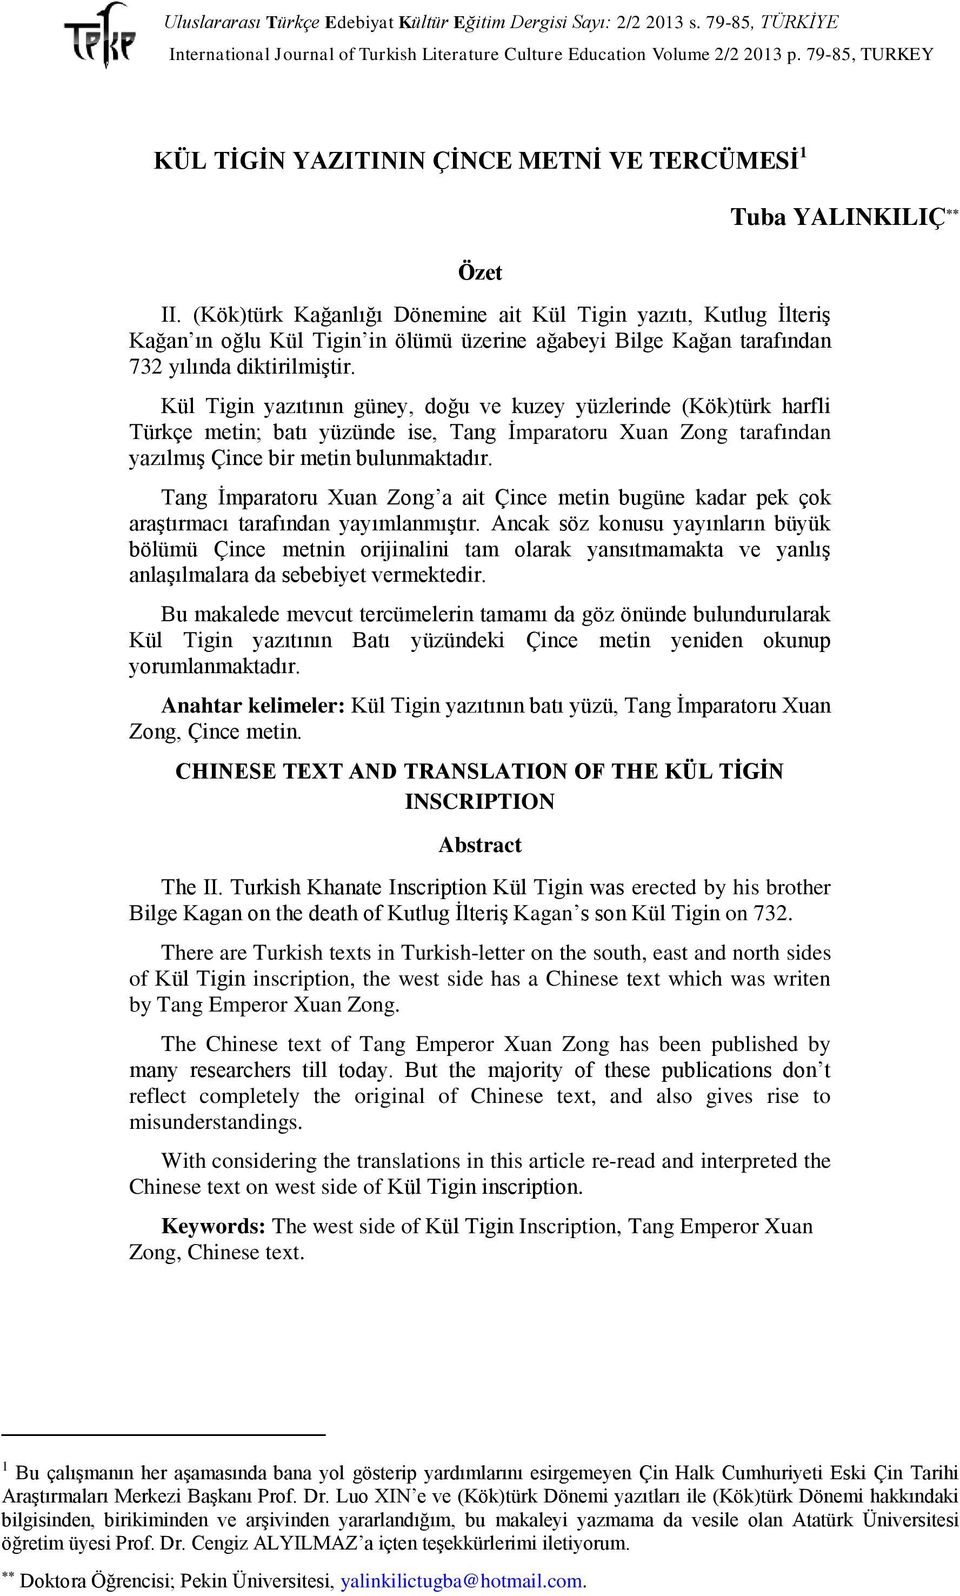 Kül Tigin yazıtının güney, doğu ve kuzey yüzlerinde (Kök)türk harfli Türkçe metin; batı yüzünde ise, Tang İmparatoru Xuan Zong tarafından yazılmış Çince bir metin bulunmaktadır.